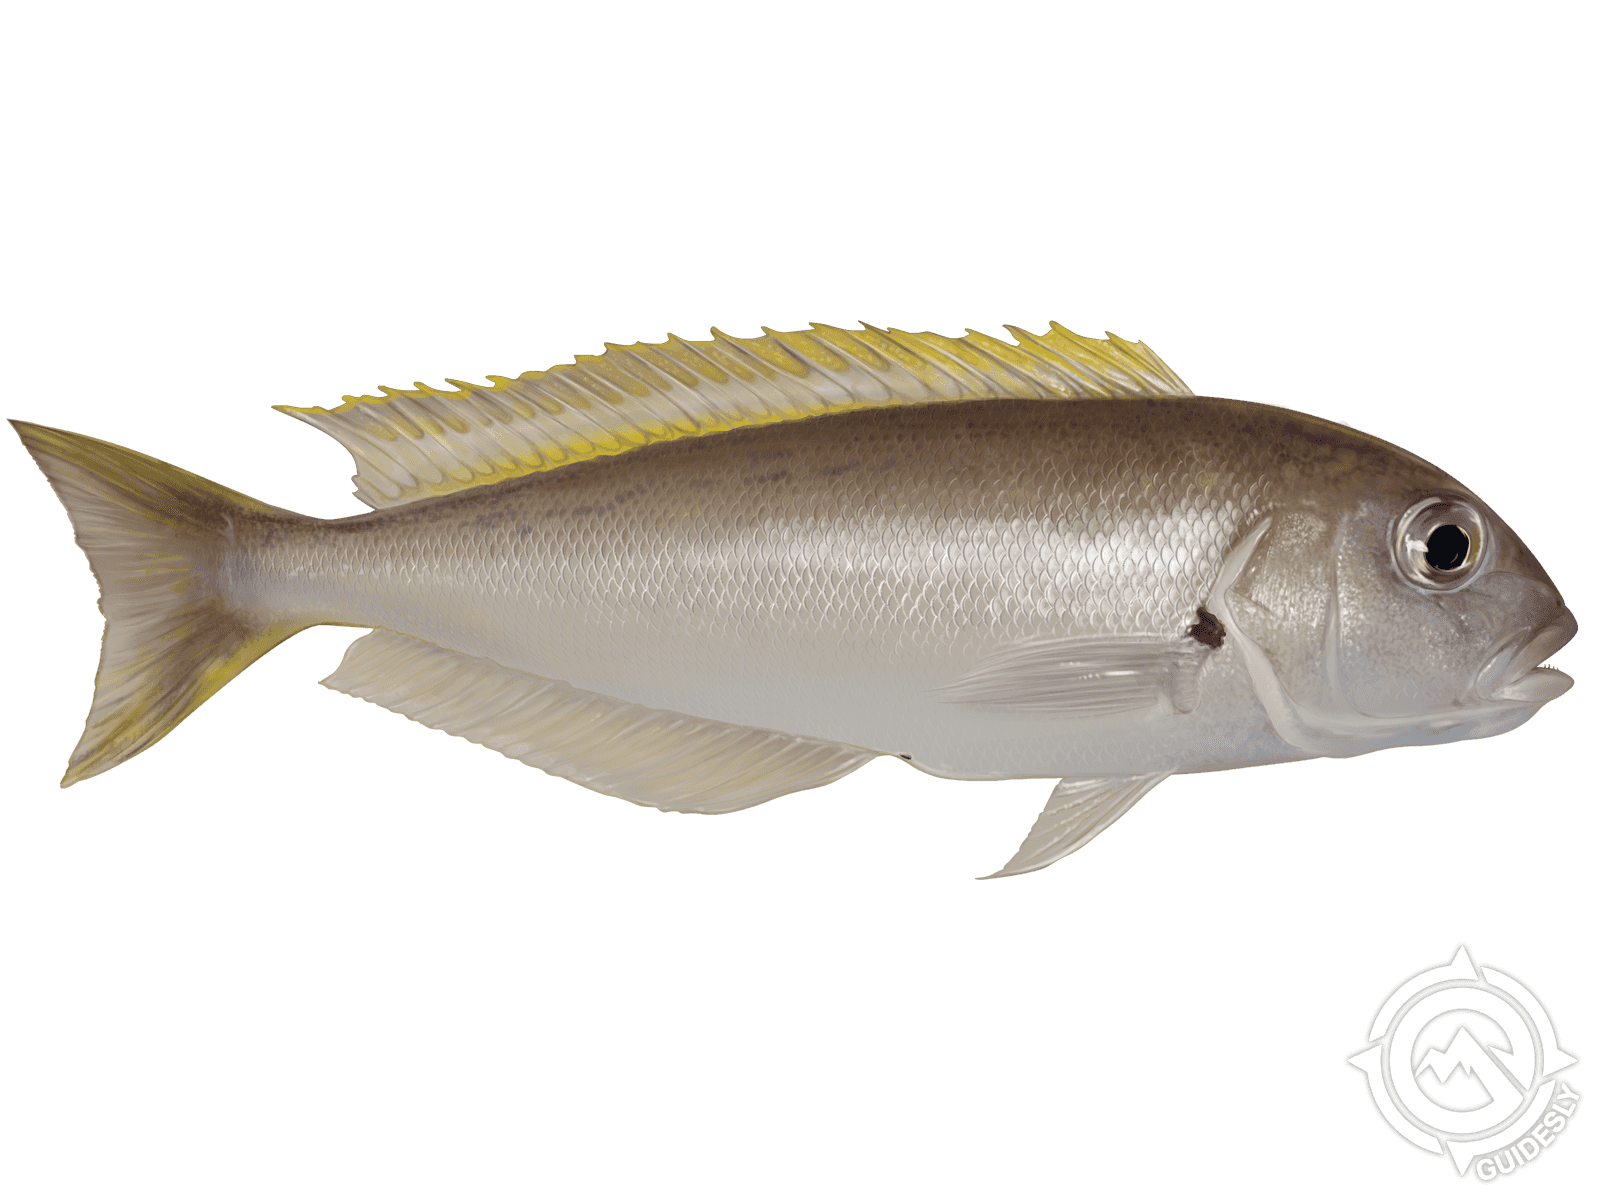 Atlantic Goldeneye Tilefish